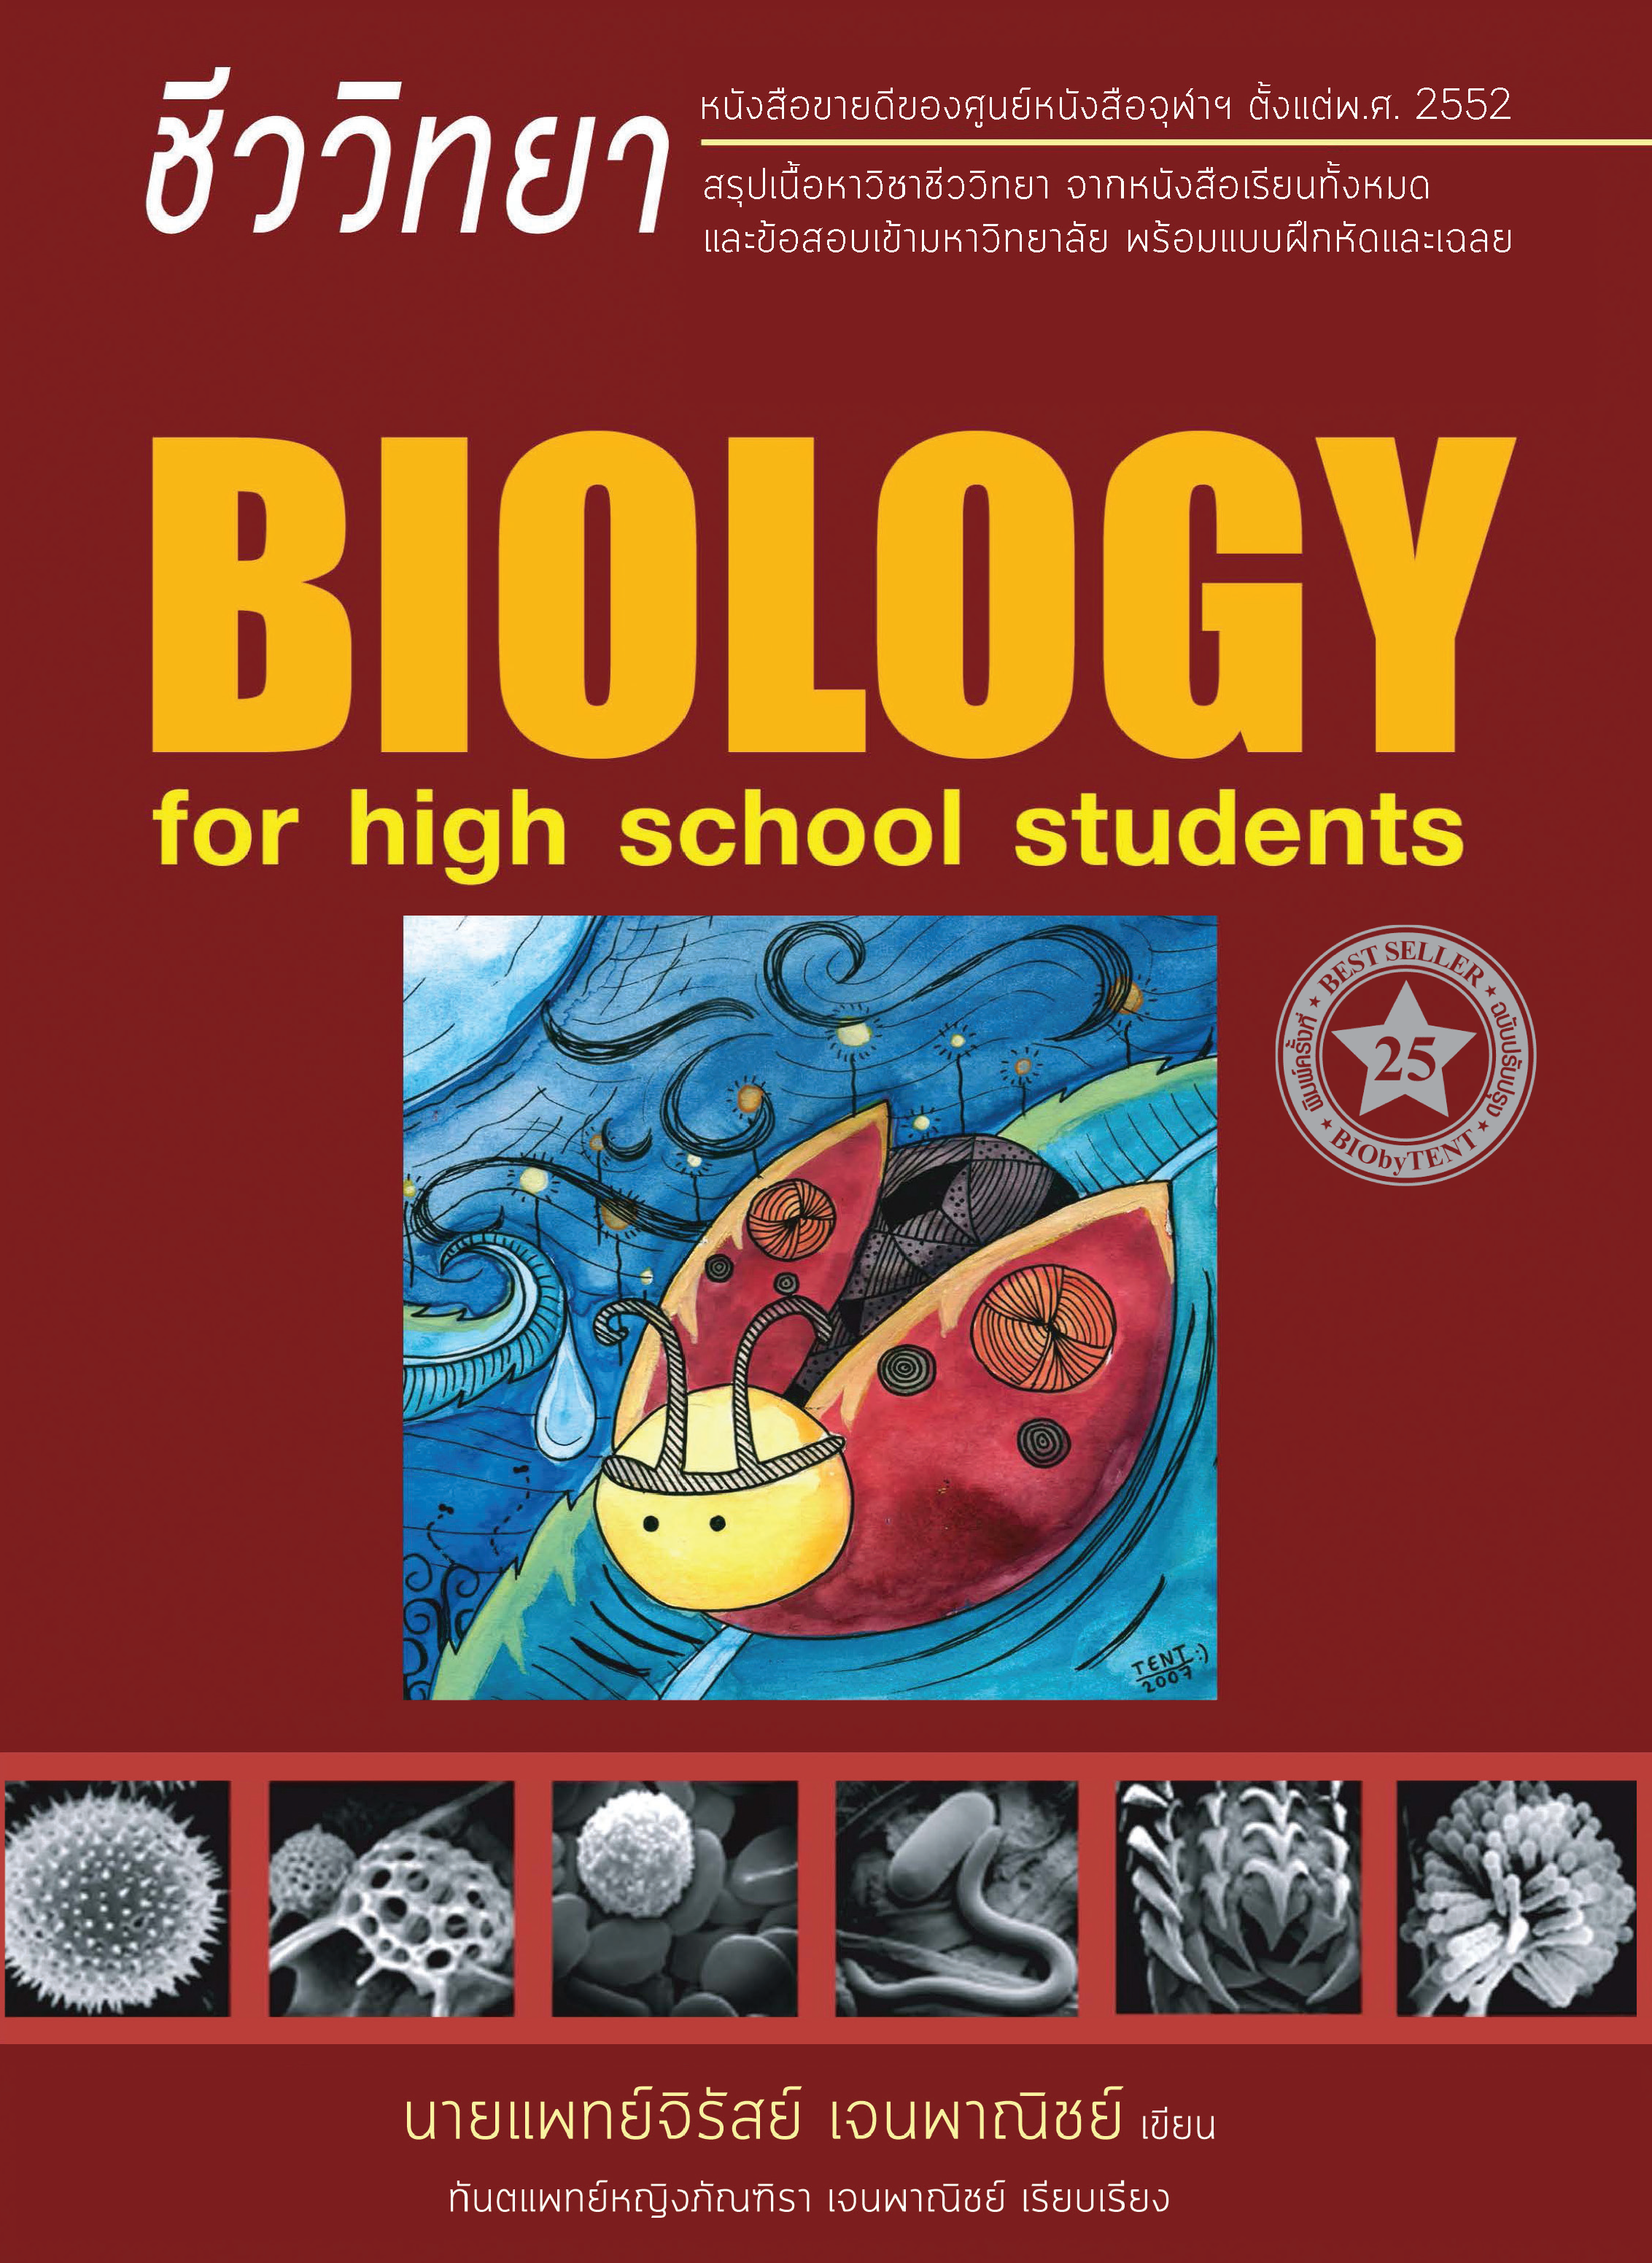 ชีววิทยา สำหรับนักเรียนมัธยมปลาย (BIOLOGY FOR HIGH SCHOOL STUDENTS) (ชีวะเต่าทอง)